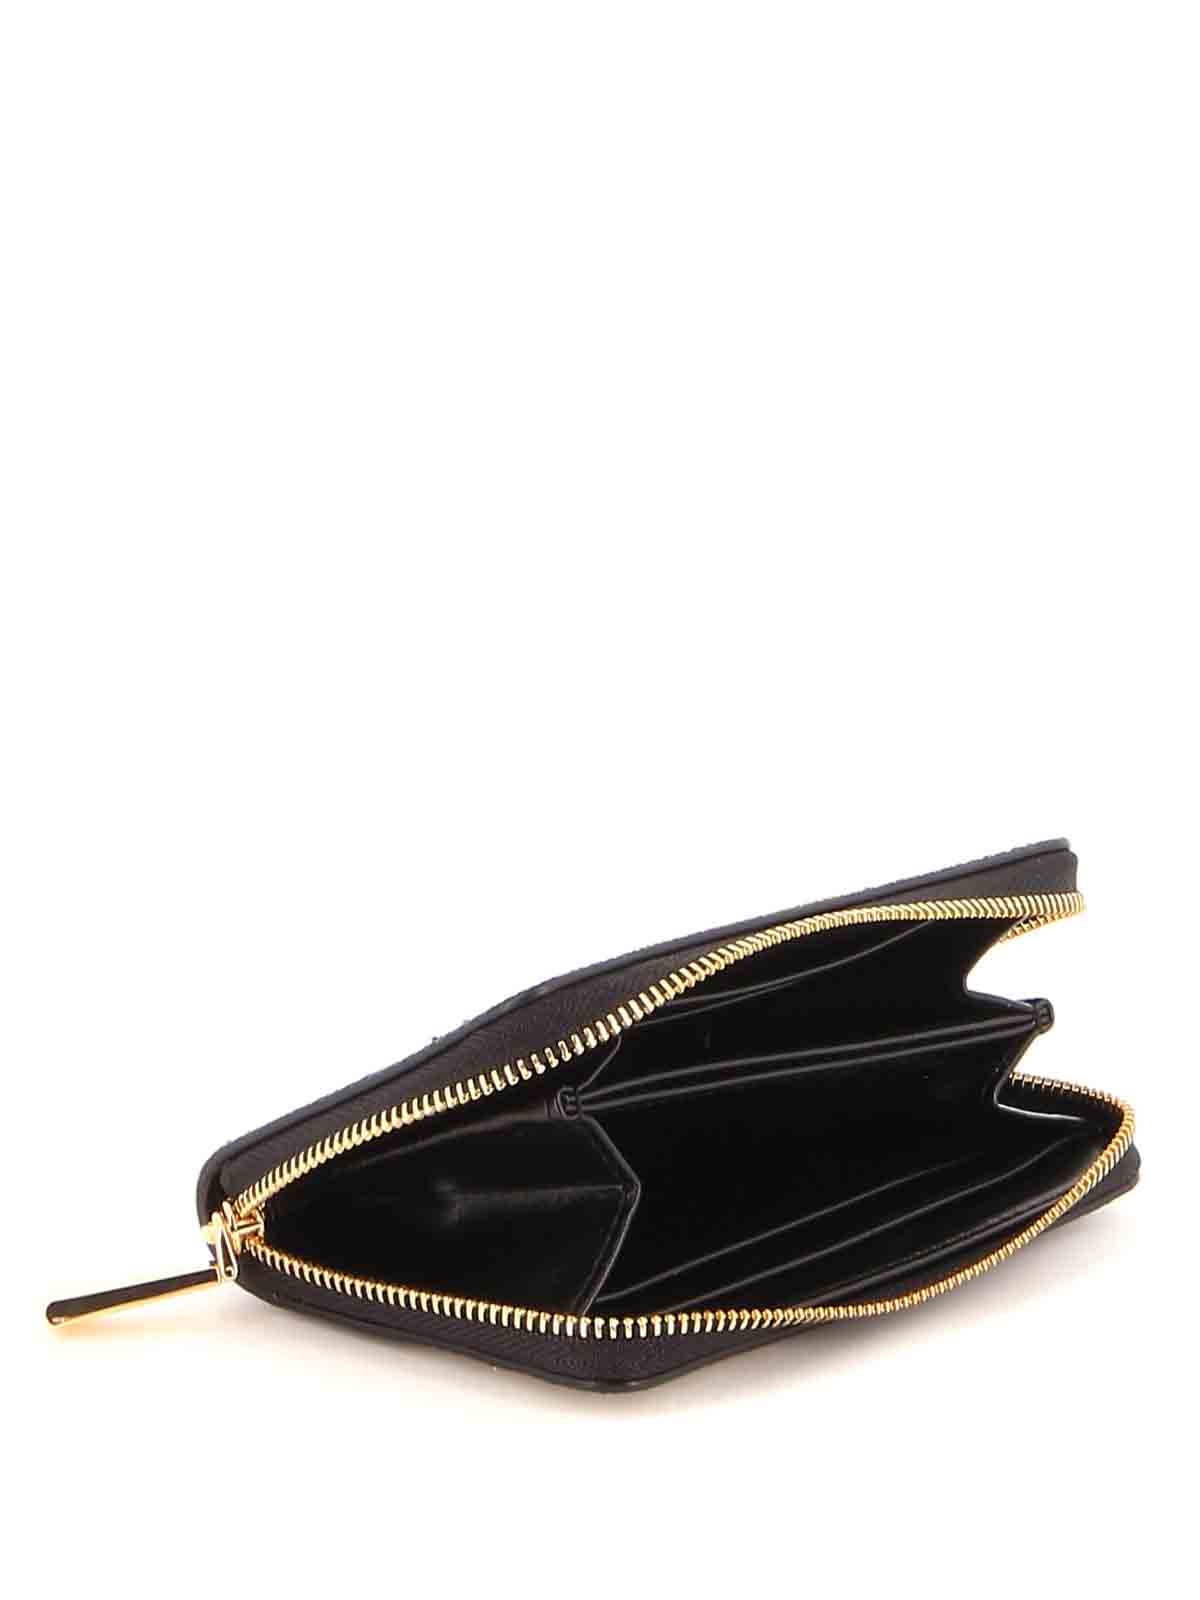 Michael Kors Women's Leather Zip Up Wallet